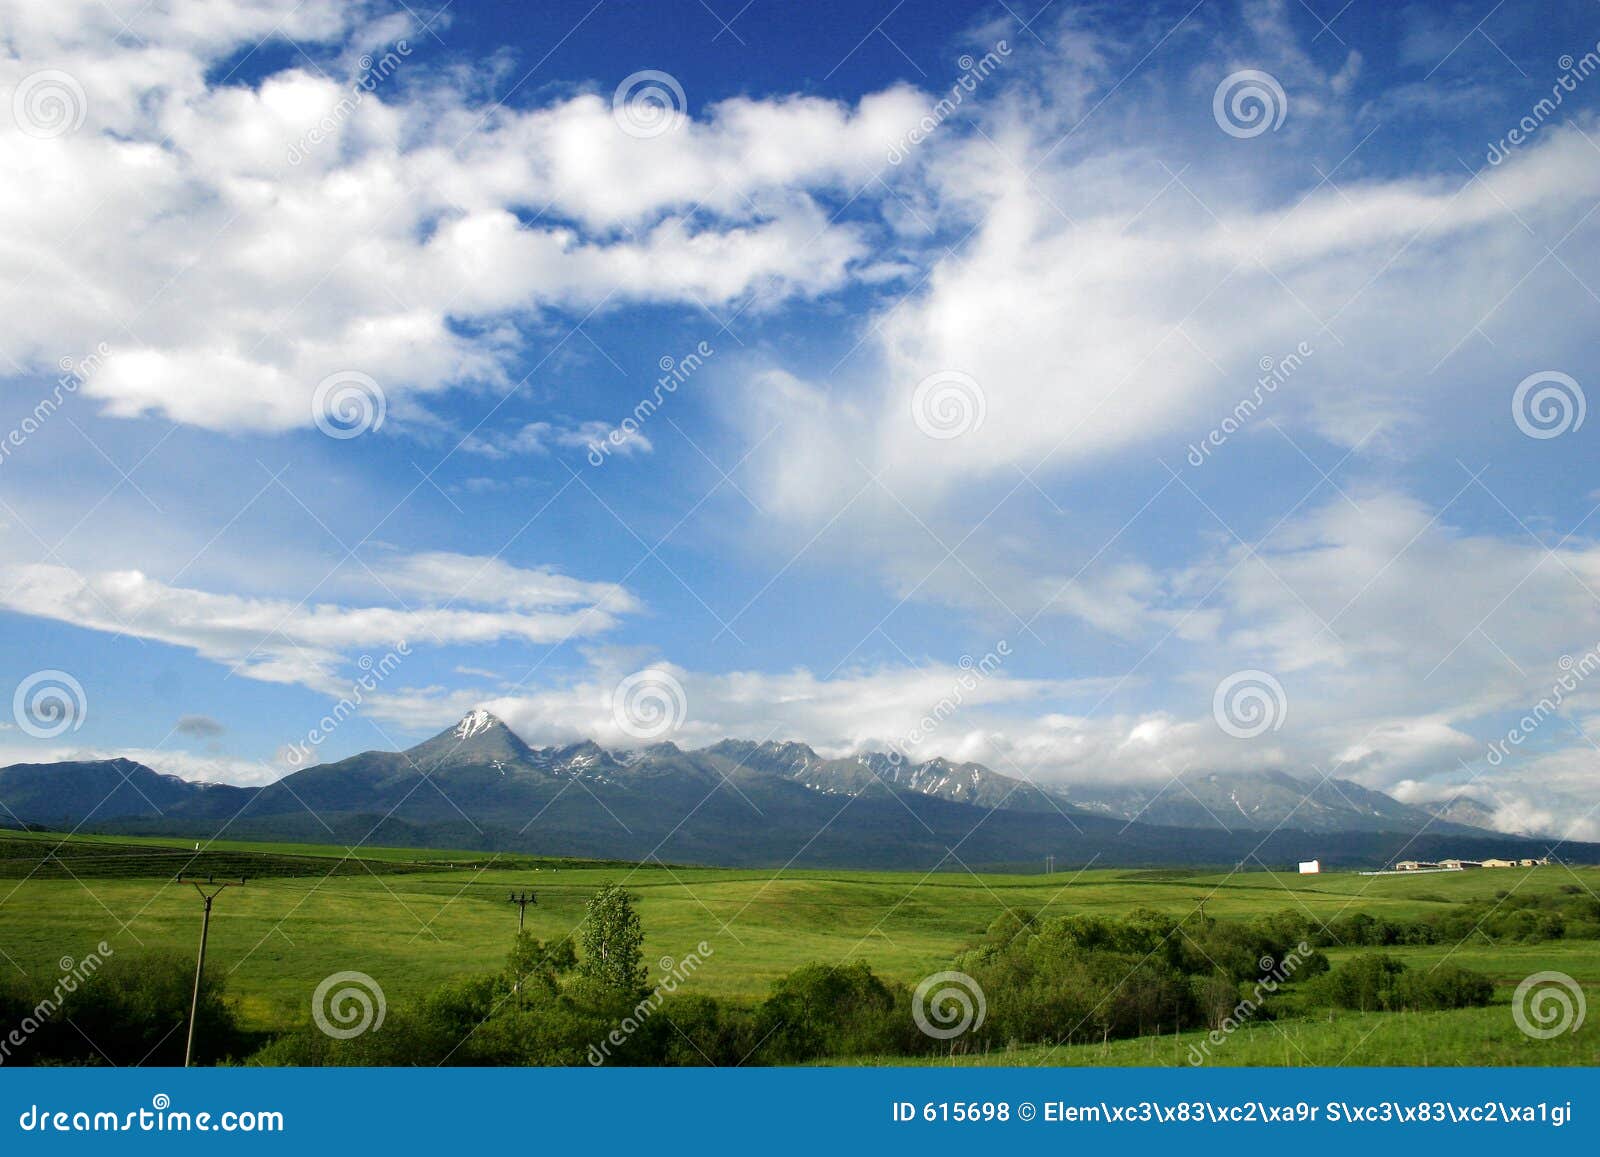 Paisagem nebulosa com montanhas. Ajardine com nuvens e o Tatras elevado no fundo.